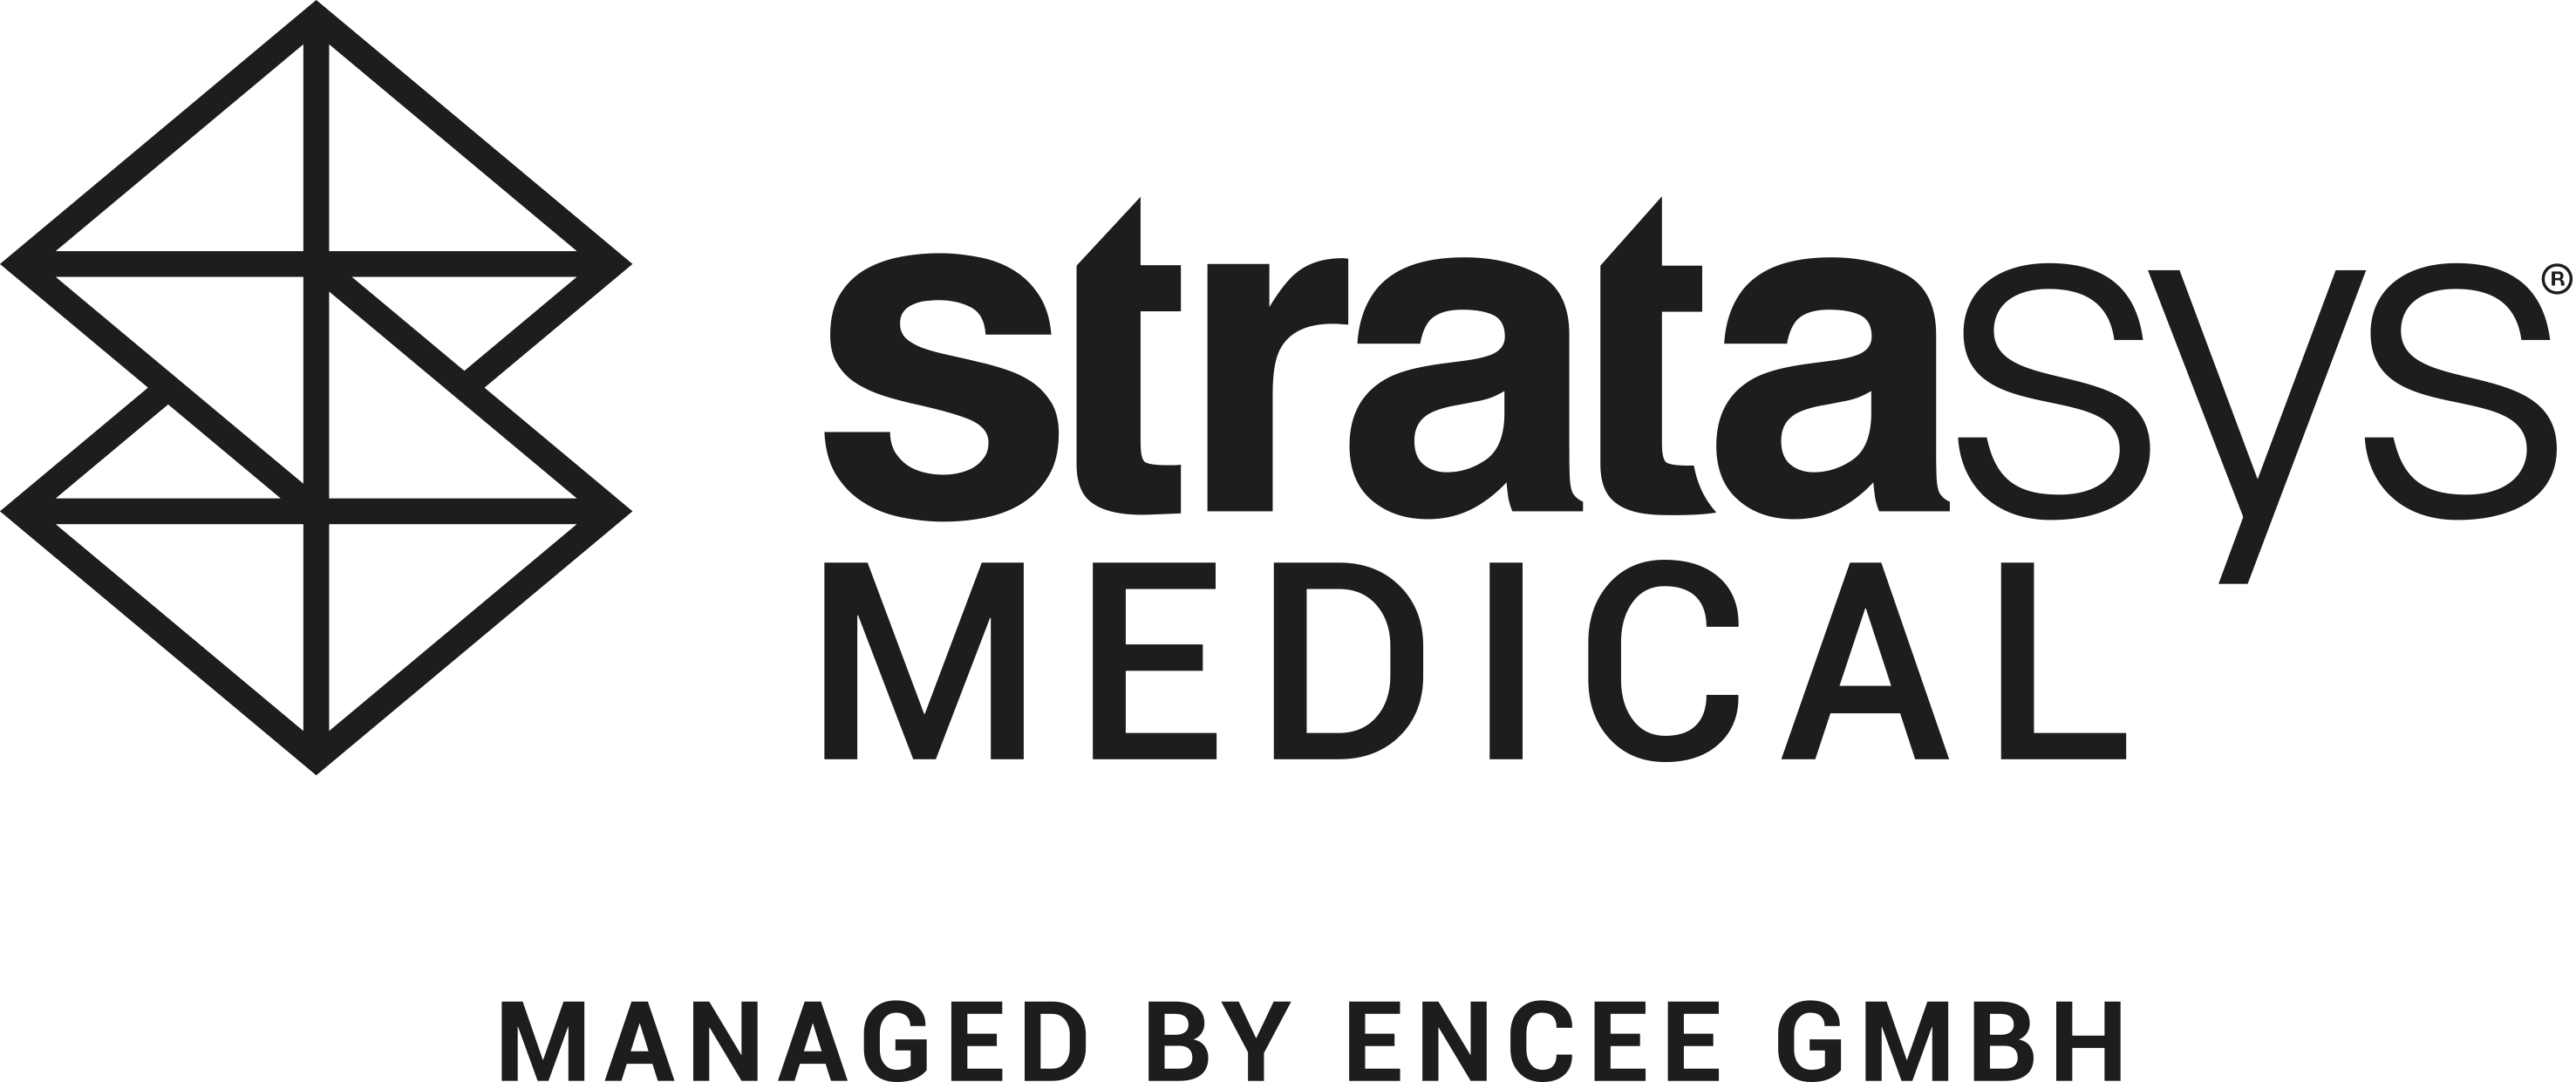 Stratasys-Medical